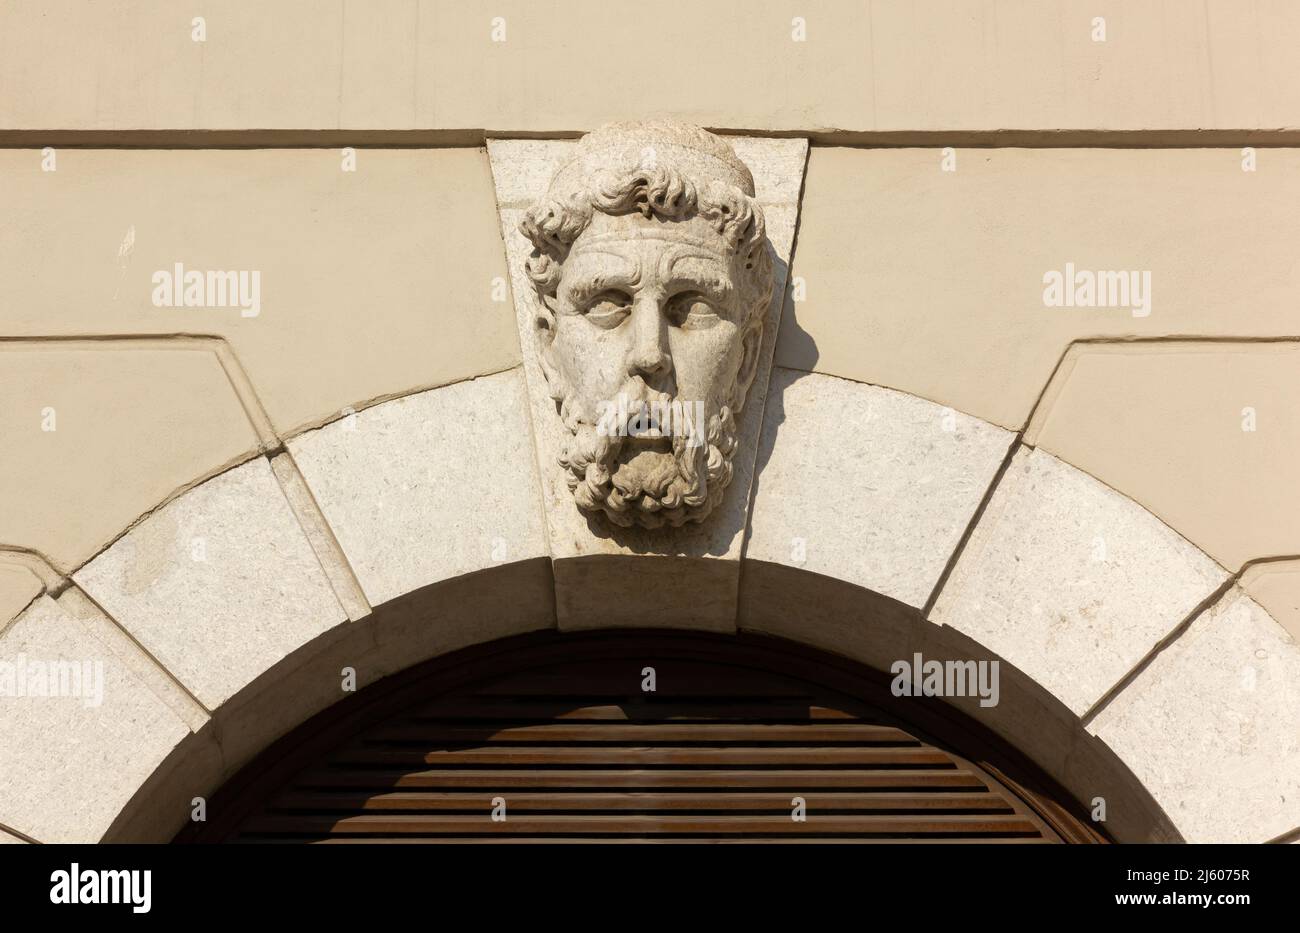 Sculpture en marbre de la tête d'un homme barbu au-dessus d'une vitrine à Trieste, Italie Banque D'Images